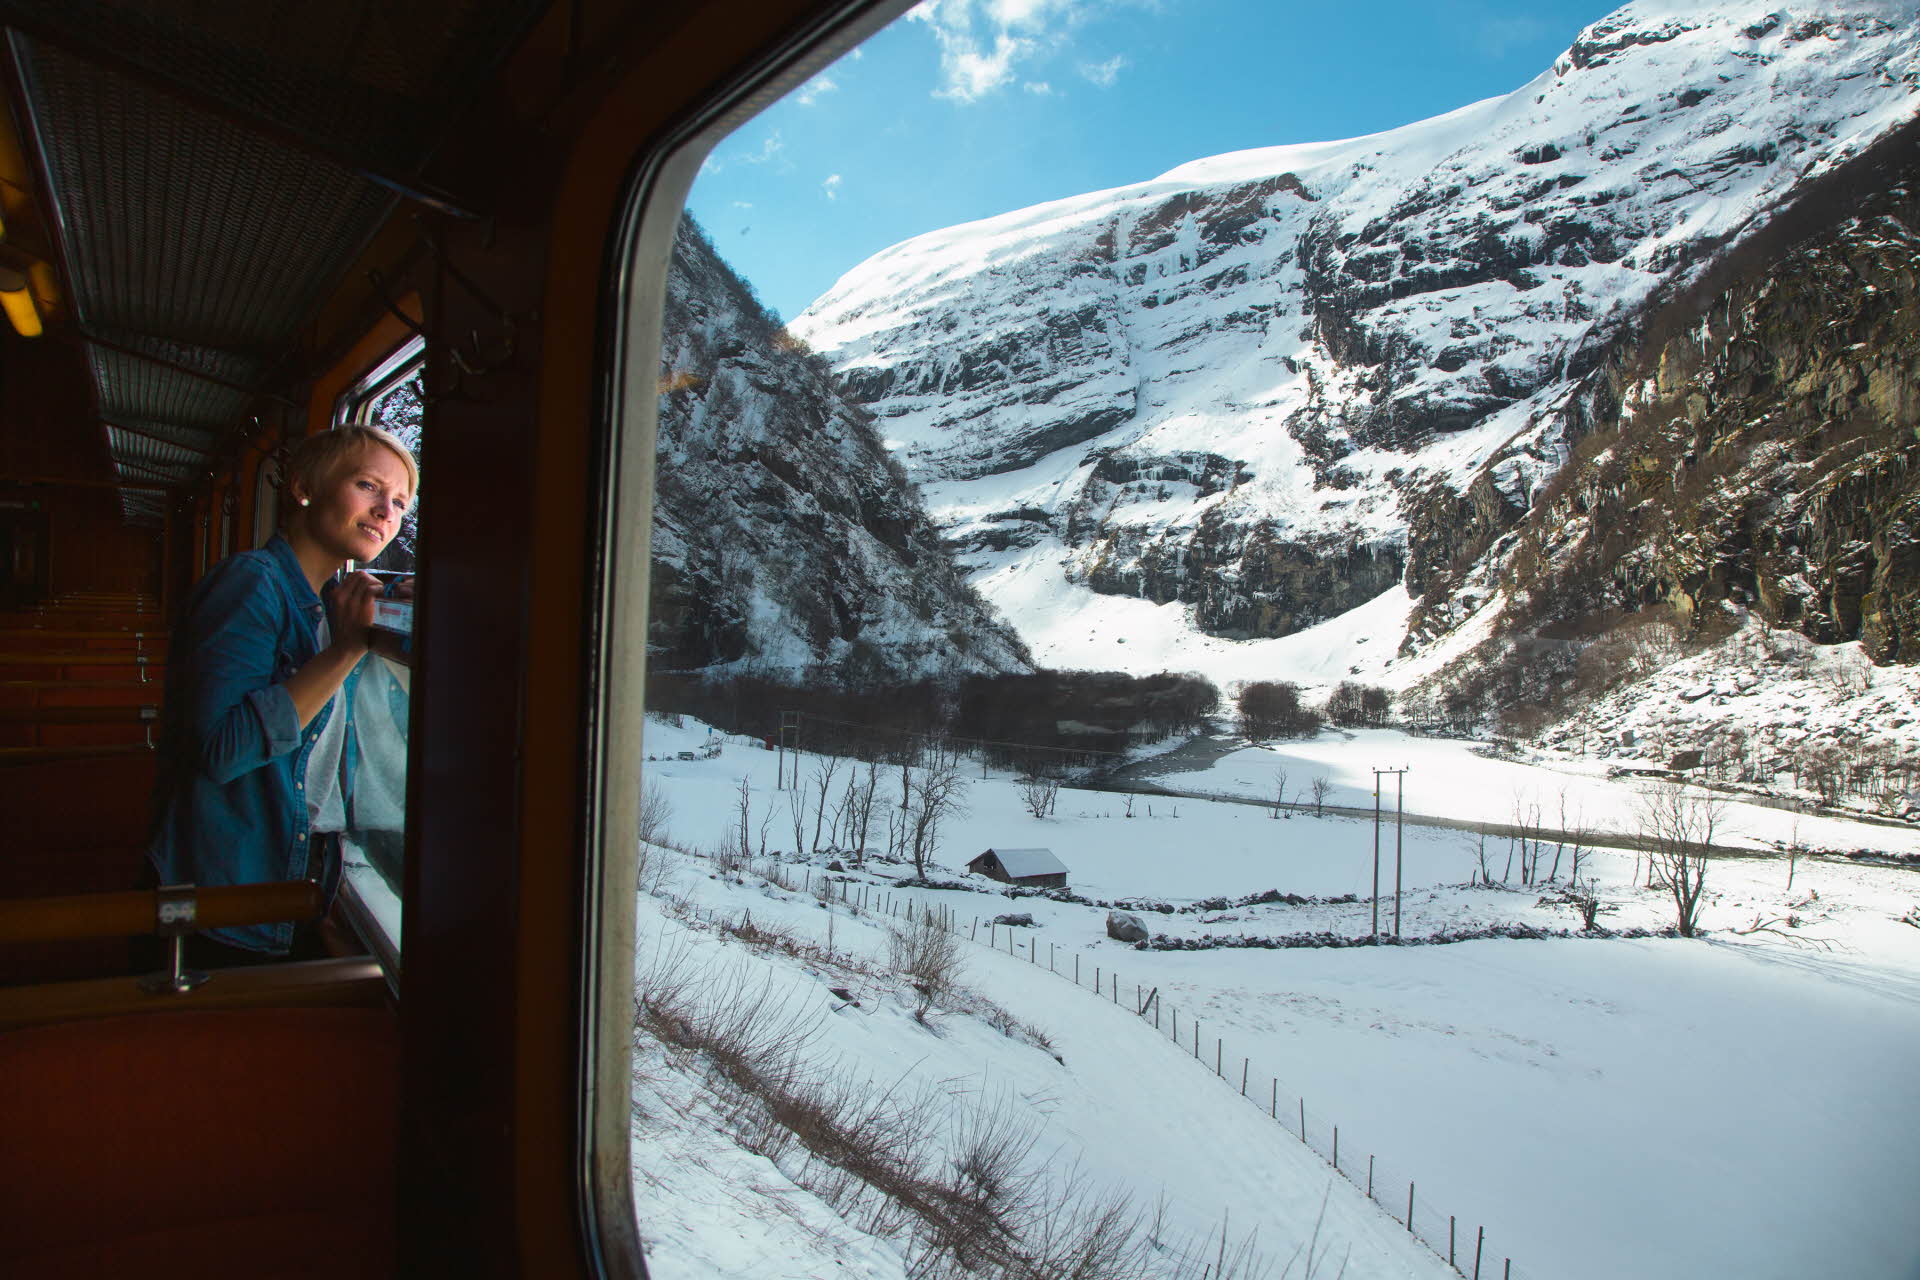 一位女士从弗洛姆火车里望向窗外看。外面是白雪皑皑的山区景观。 